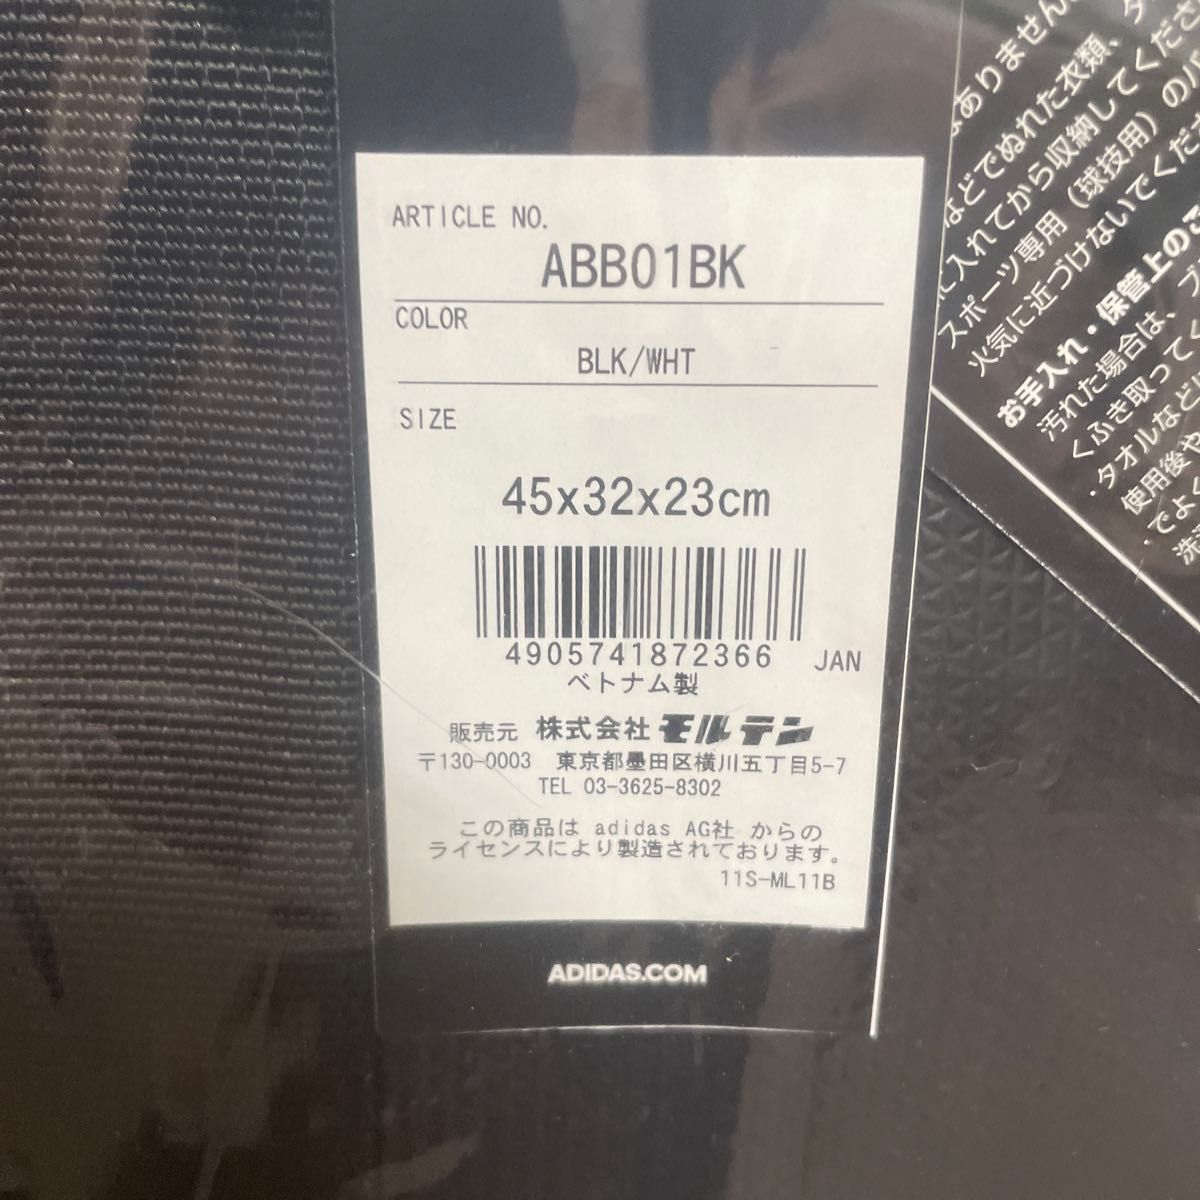 ボストン型ボールバッグ ABB01BK （ブラック/ホワイト）